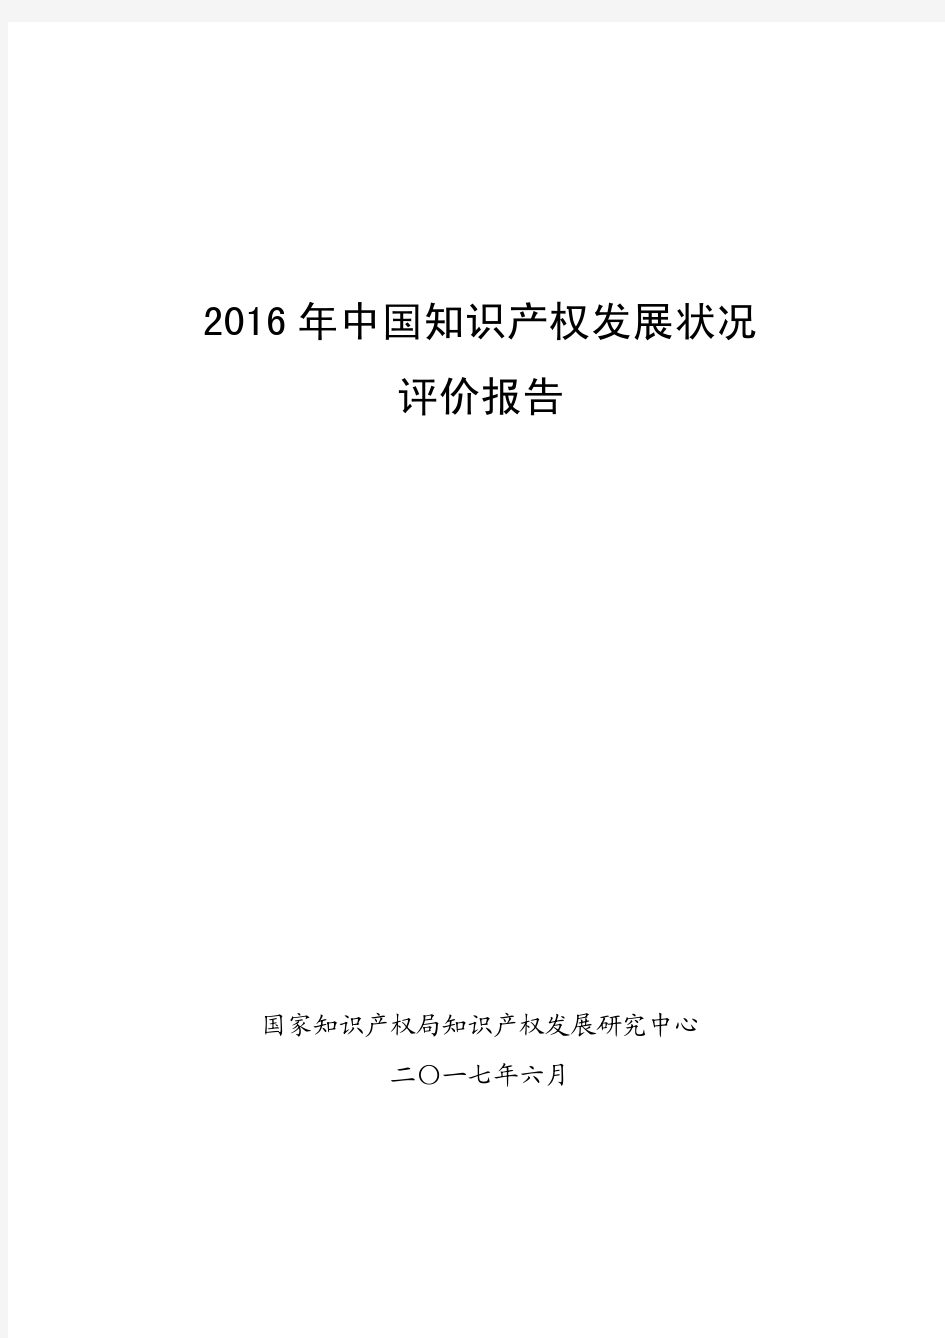 2016年中国知识产权发展状况评价报告(全文)